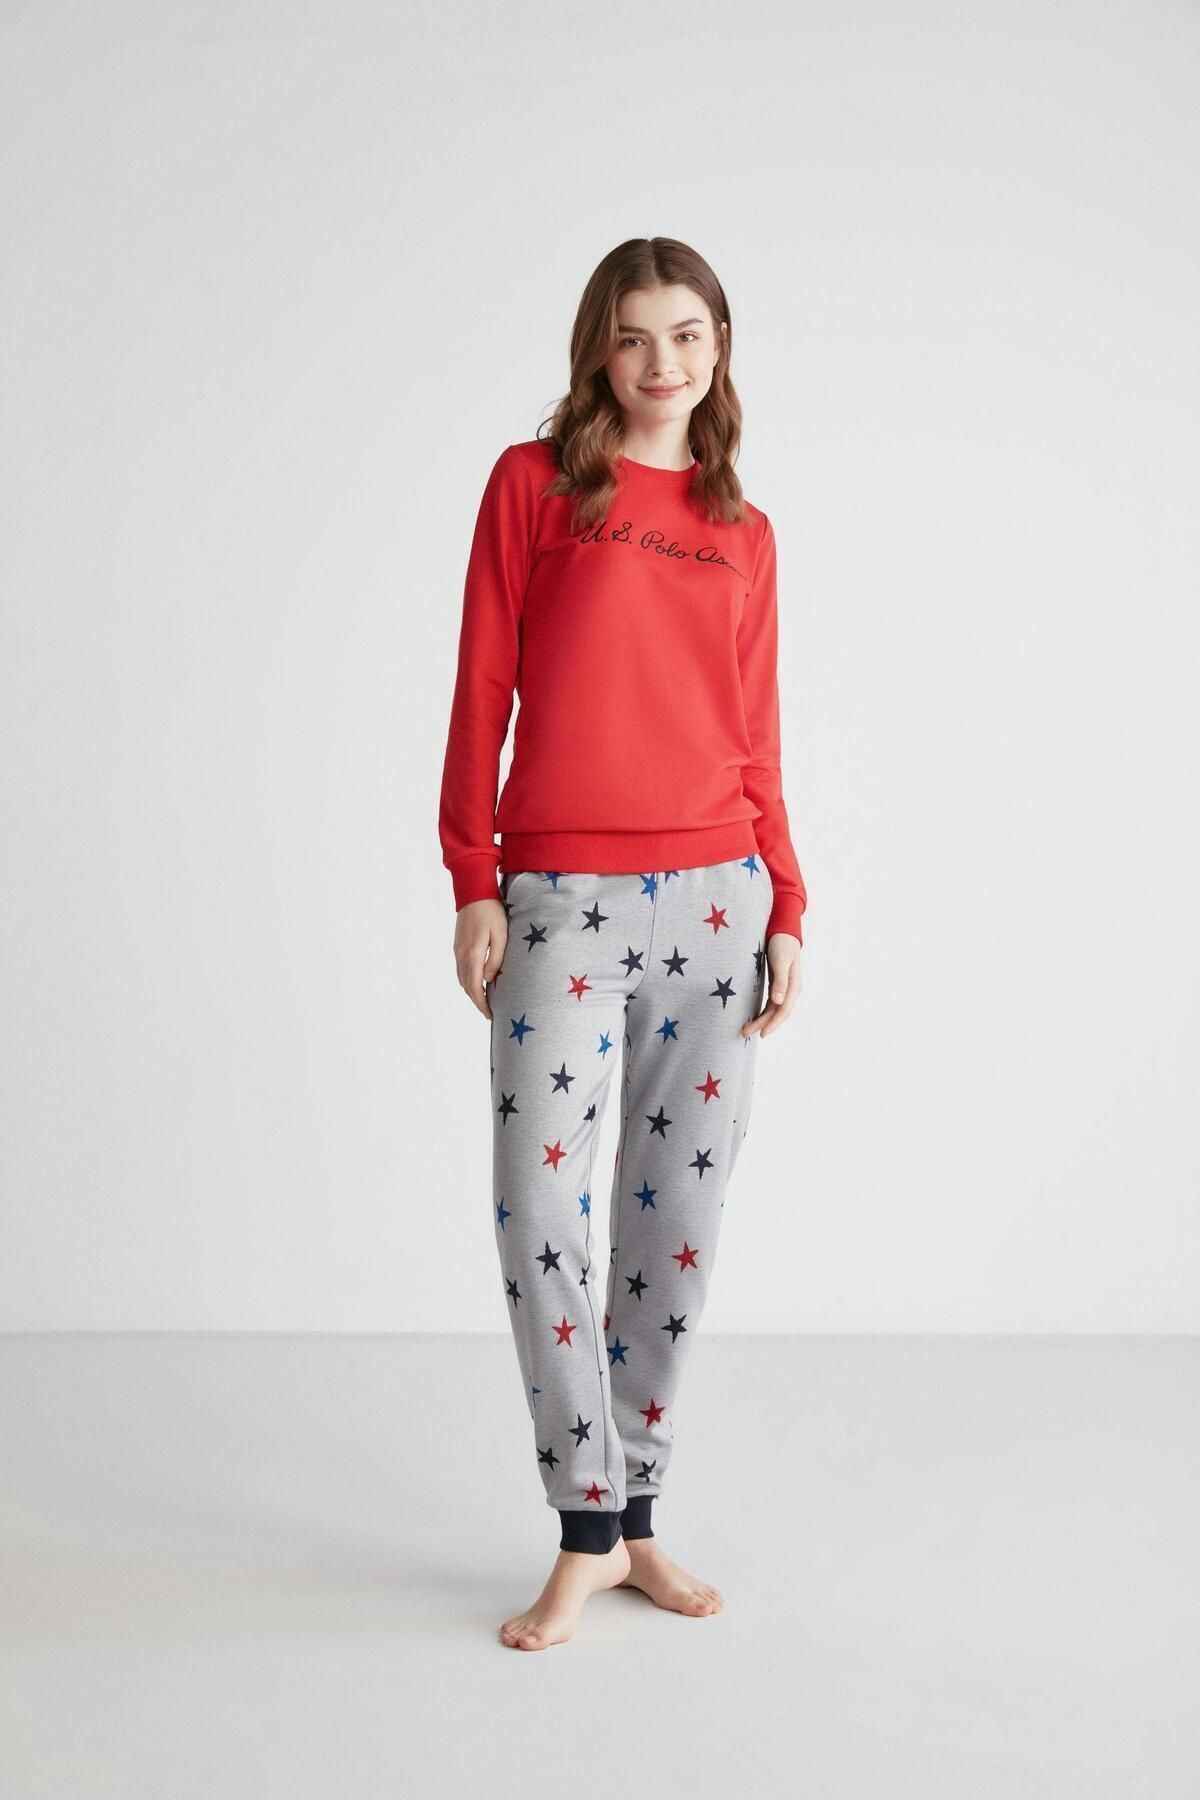 U.S. Polo Assn. Kadın Pamuklu Kırmızı Dar Paça Kışlık Pijama Takımı